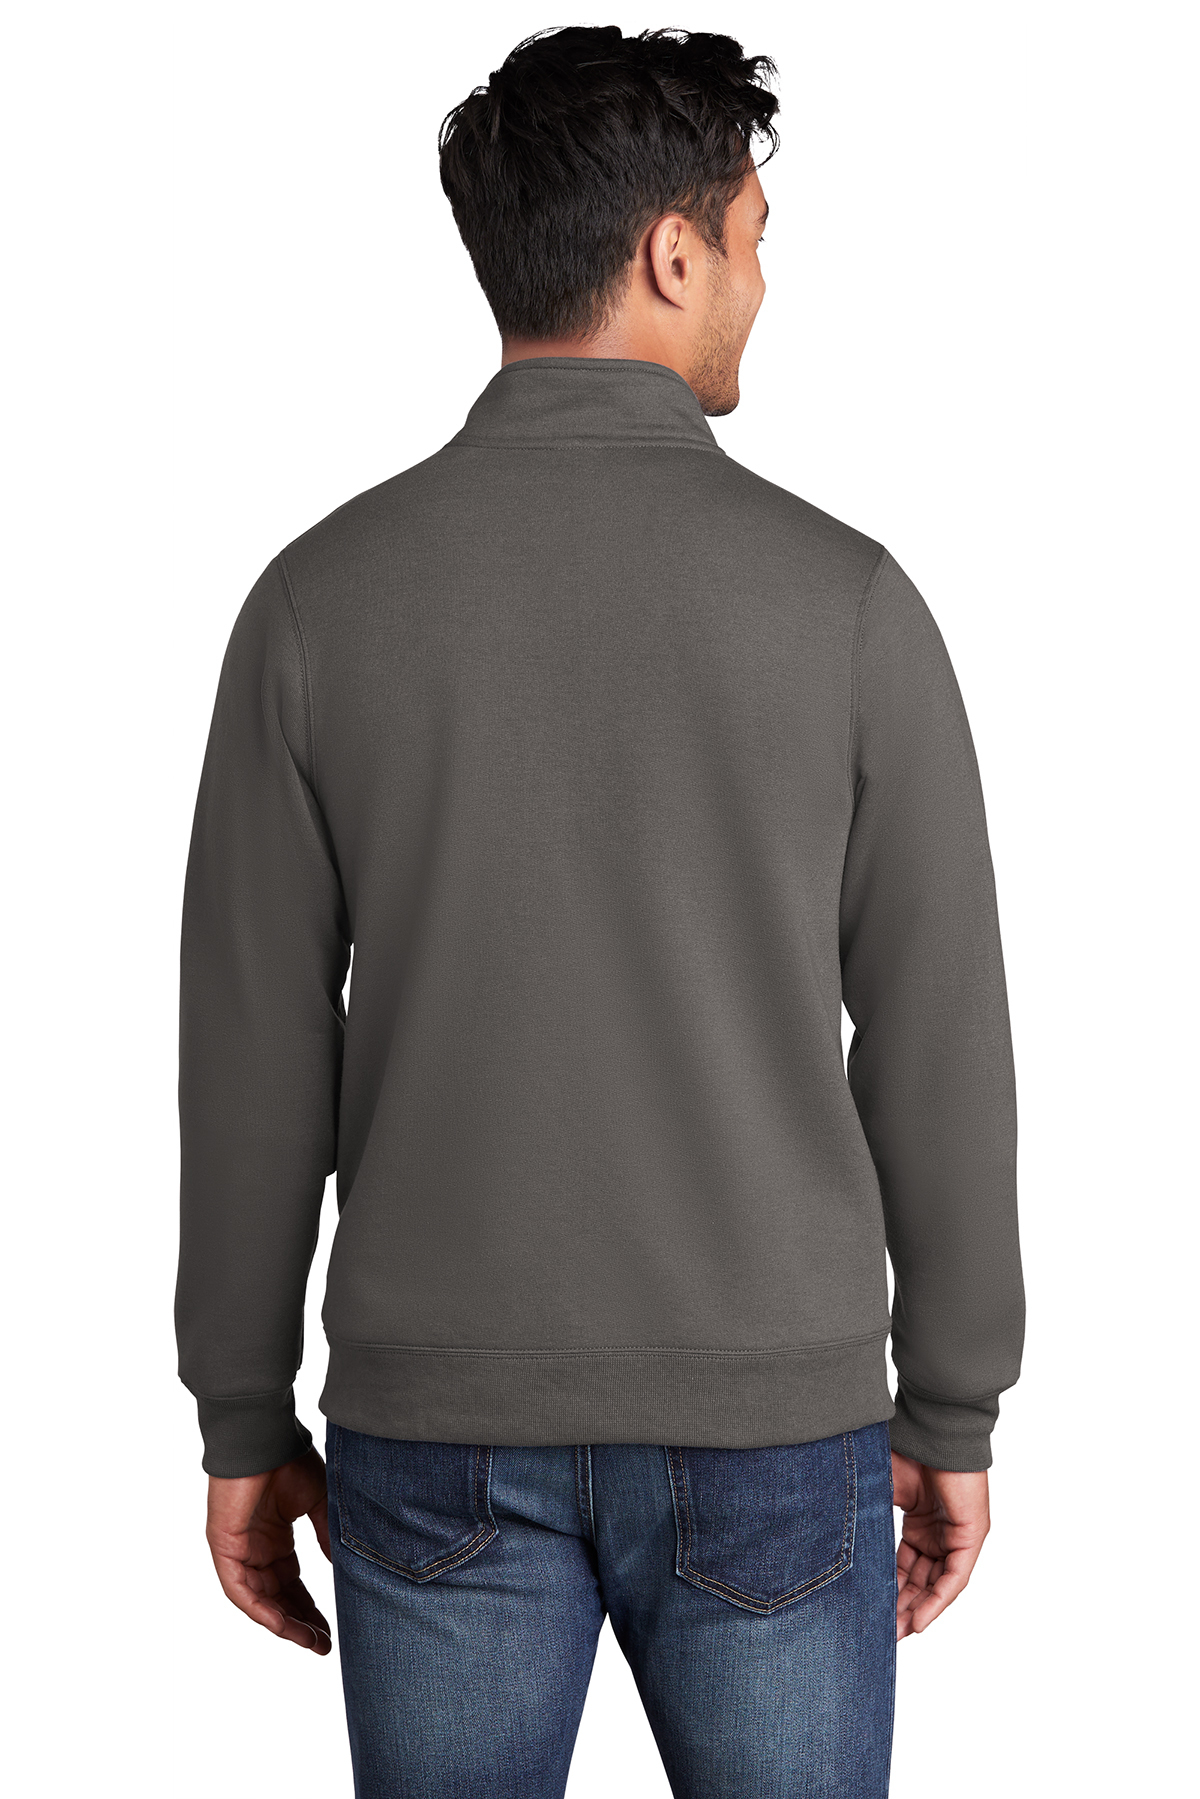 Port & Company Core Fleece Cadet Full-Zip Sweatshirt | Product | Port ...